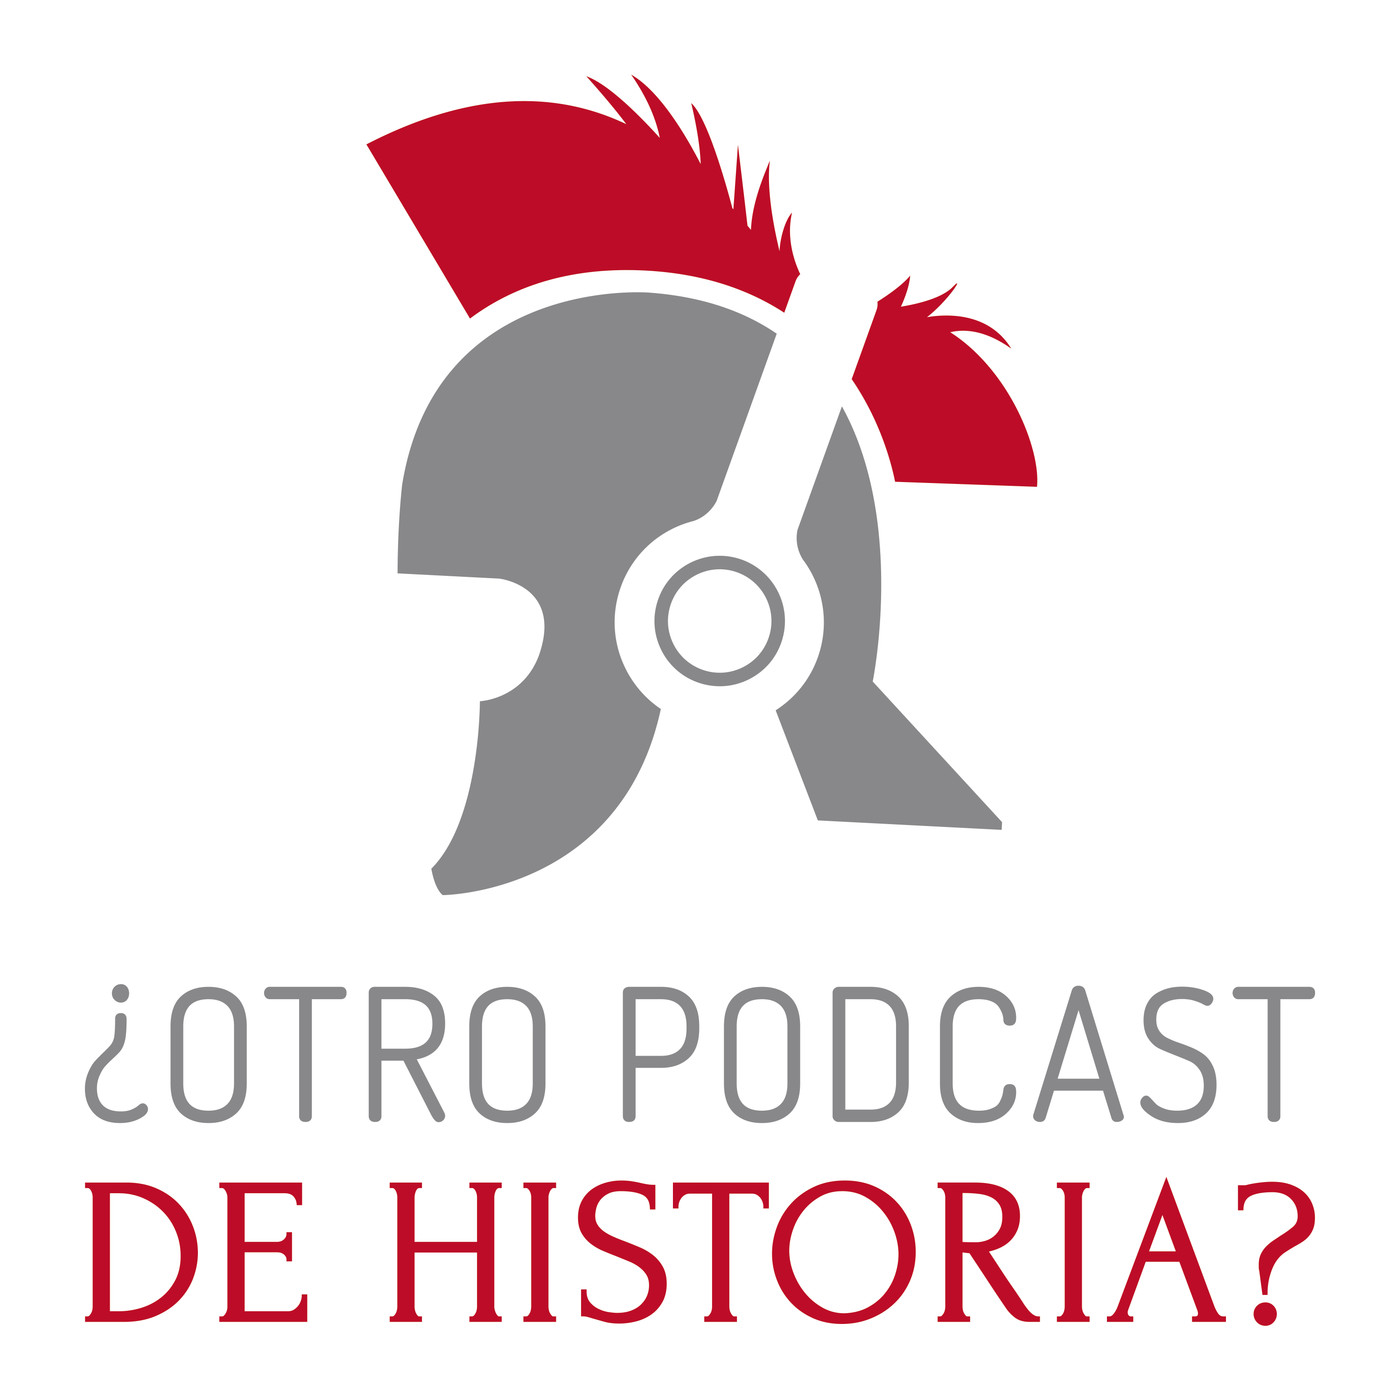 Otro podcast de historia